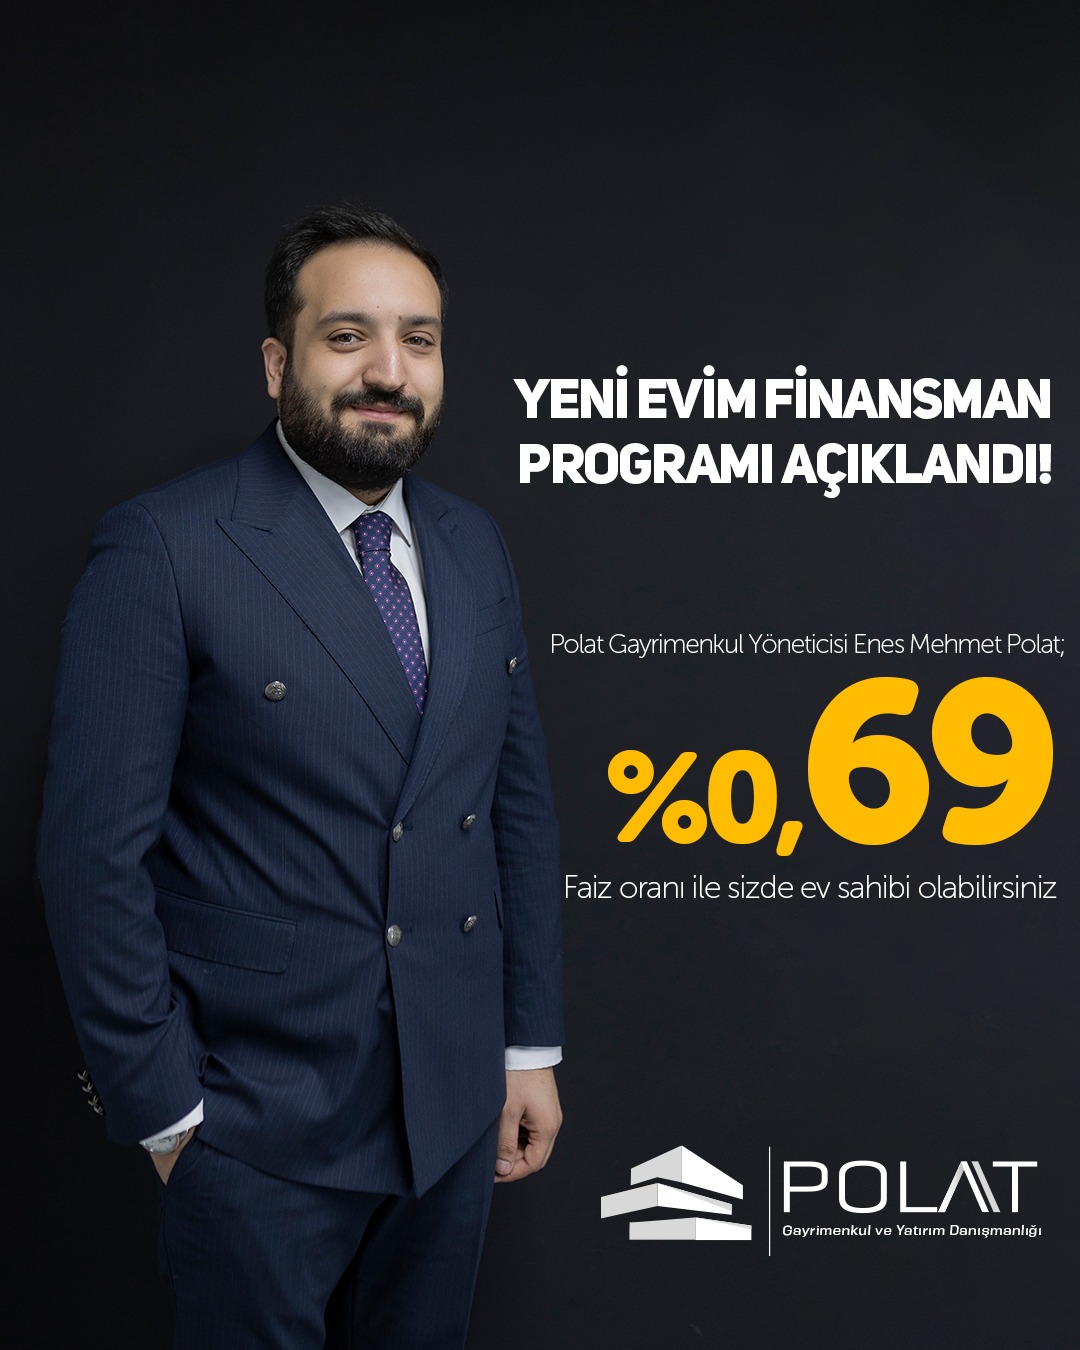 Polat Gayrimenkul ve Yatırım Danışmanlığı Yöneticisi Polat: Yüzde 0.69 oranla sizde ev sahibi olabilirsiniz…